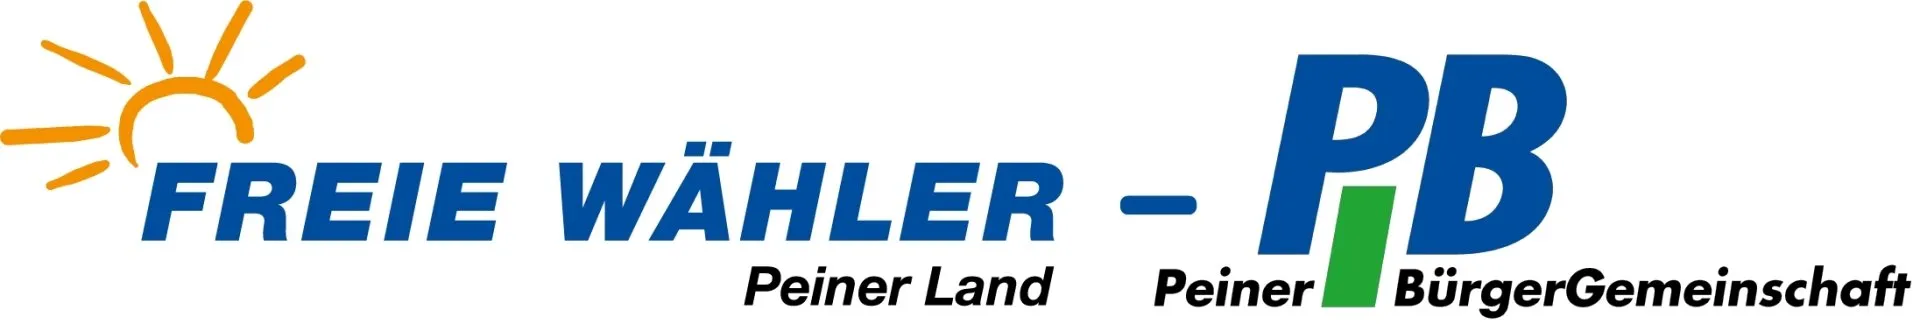 Logo Freie Wähler Peiner Land Peiner BürgerGemeinschaft